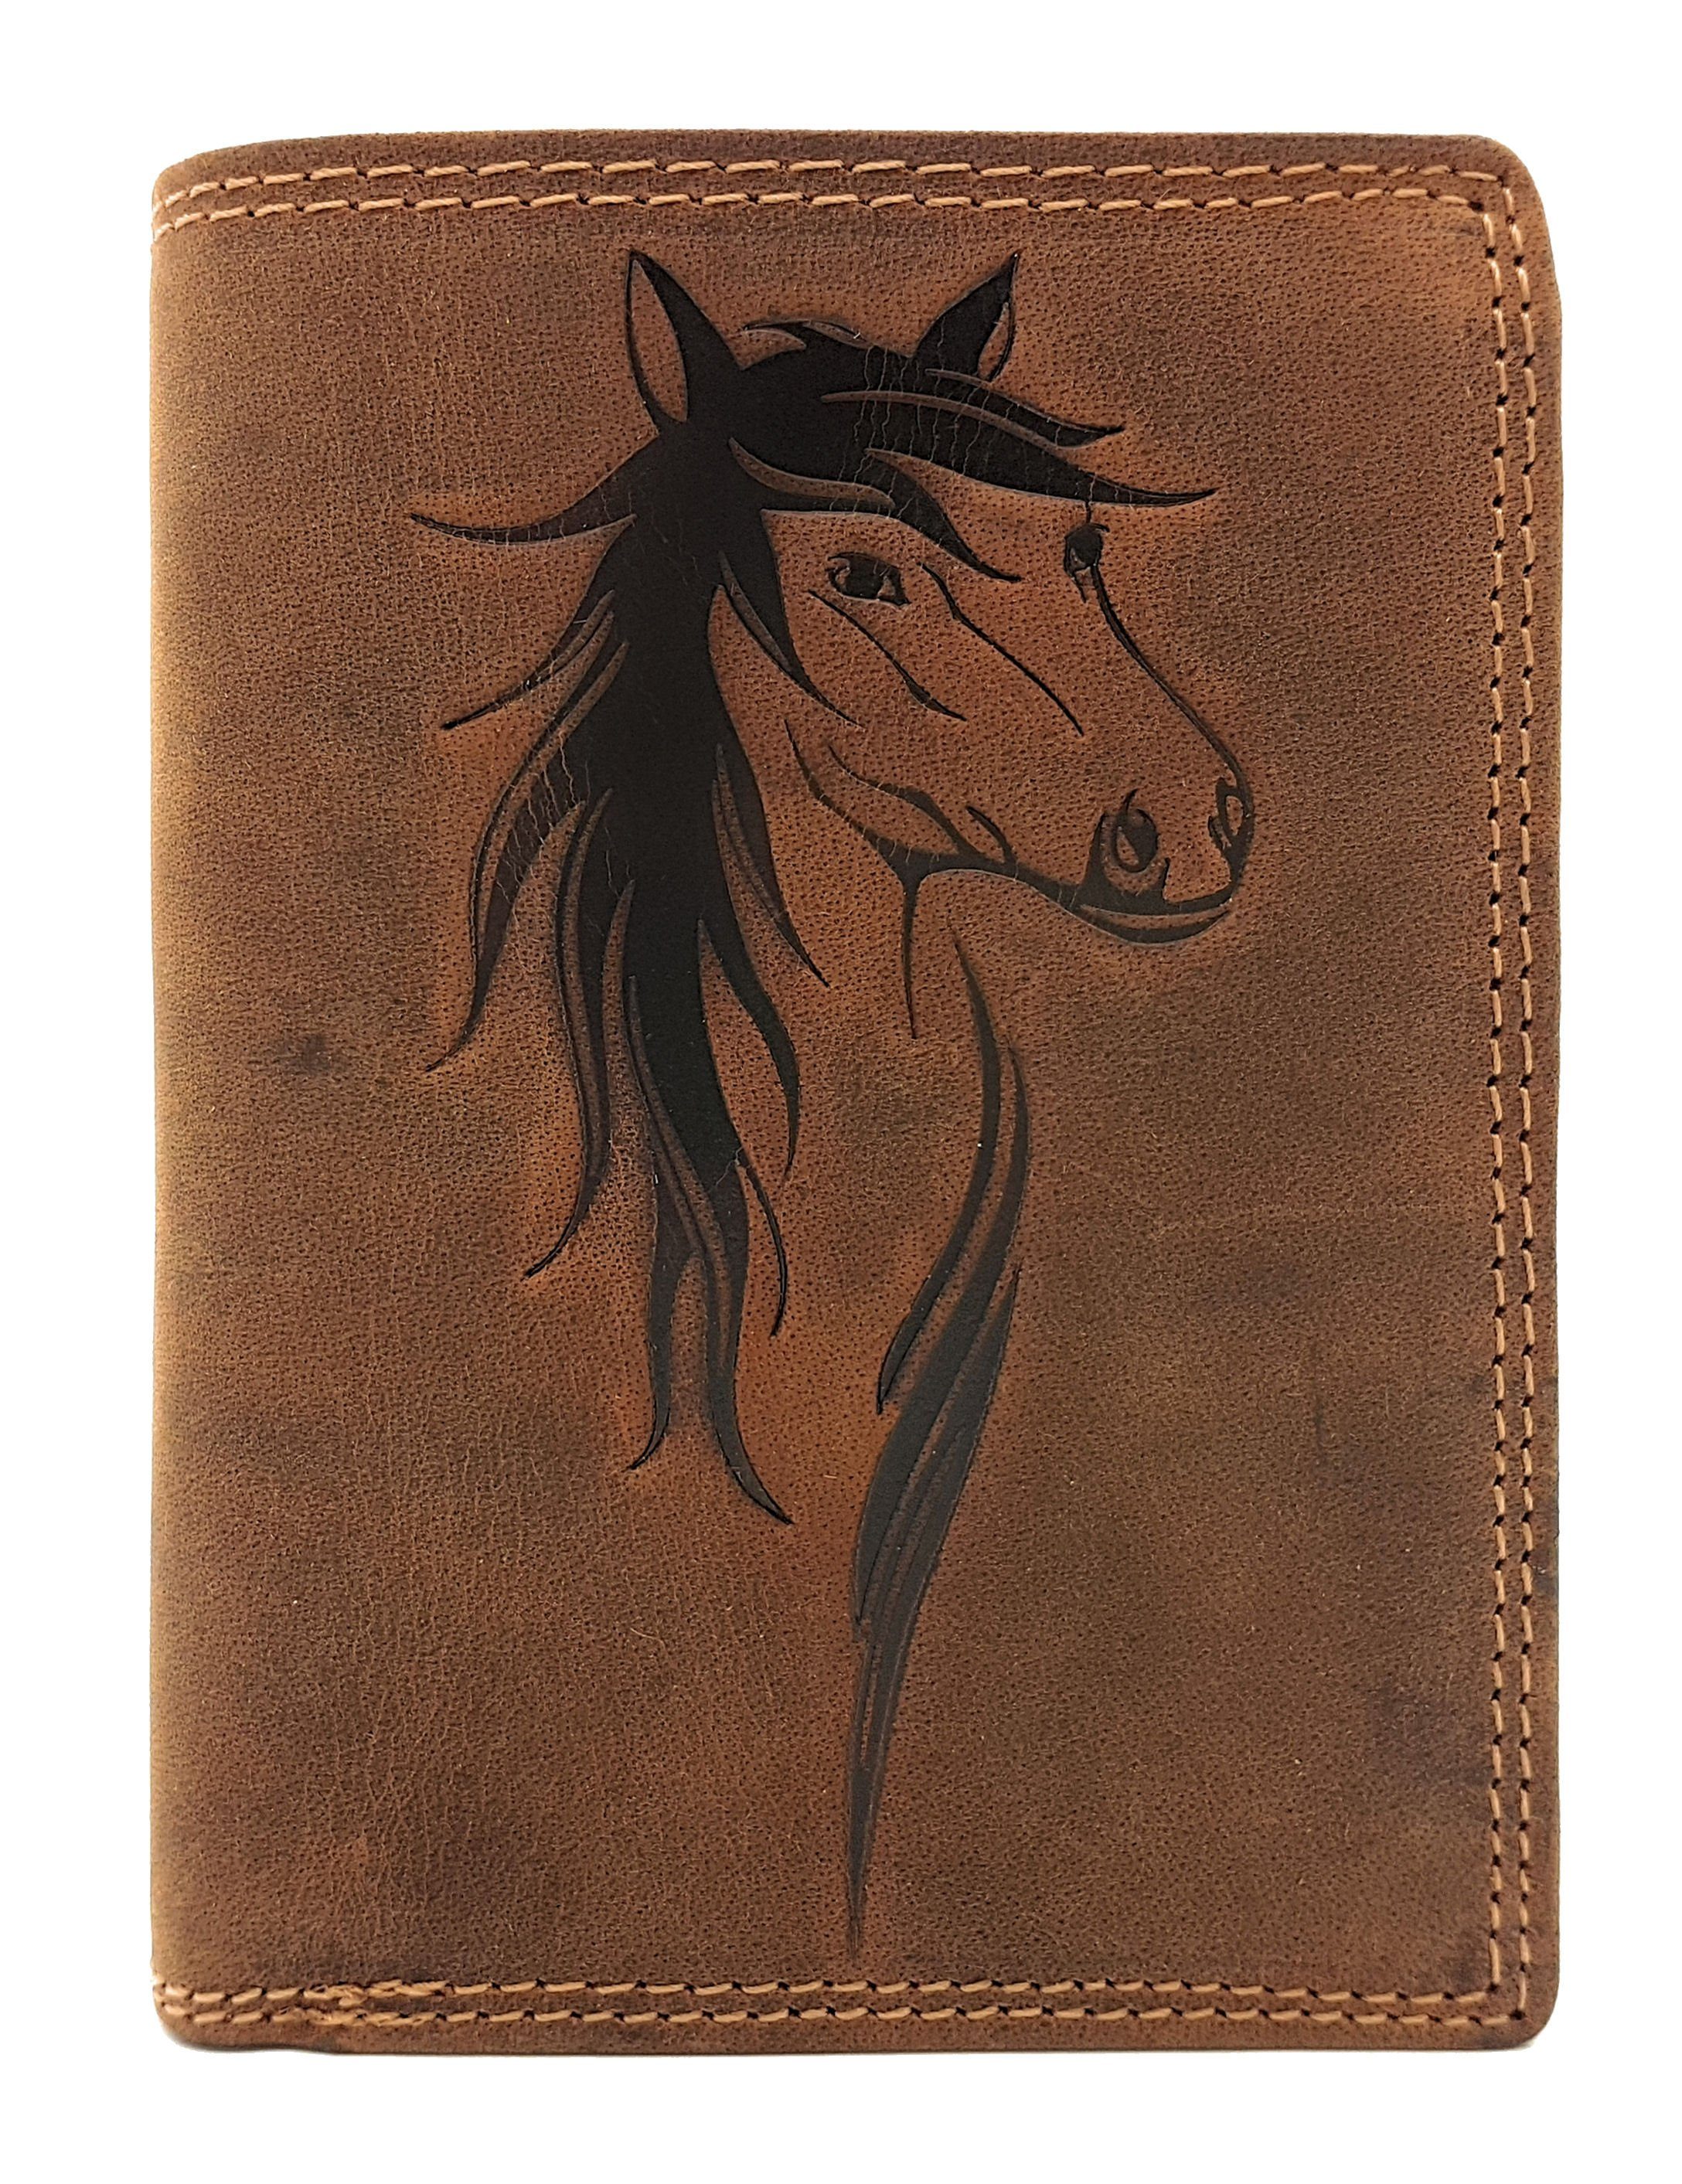 JOCKEY CLUB Geldbörse Pferd, echt Leder, Pferdemotiv, mit RFID Schutz, umfangreiche Ausstattung